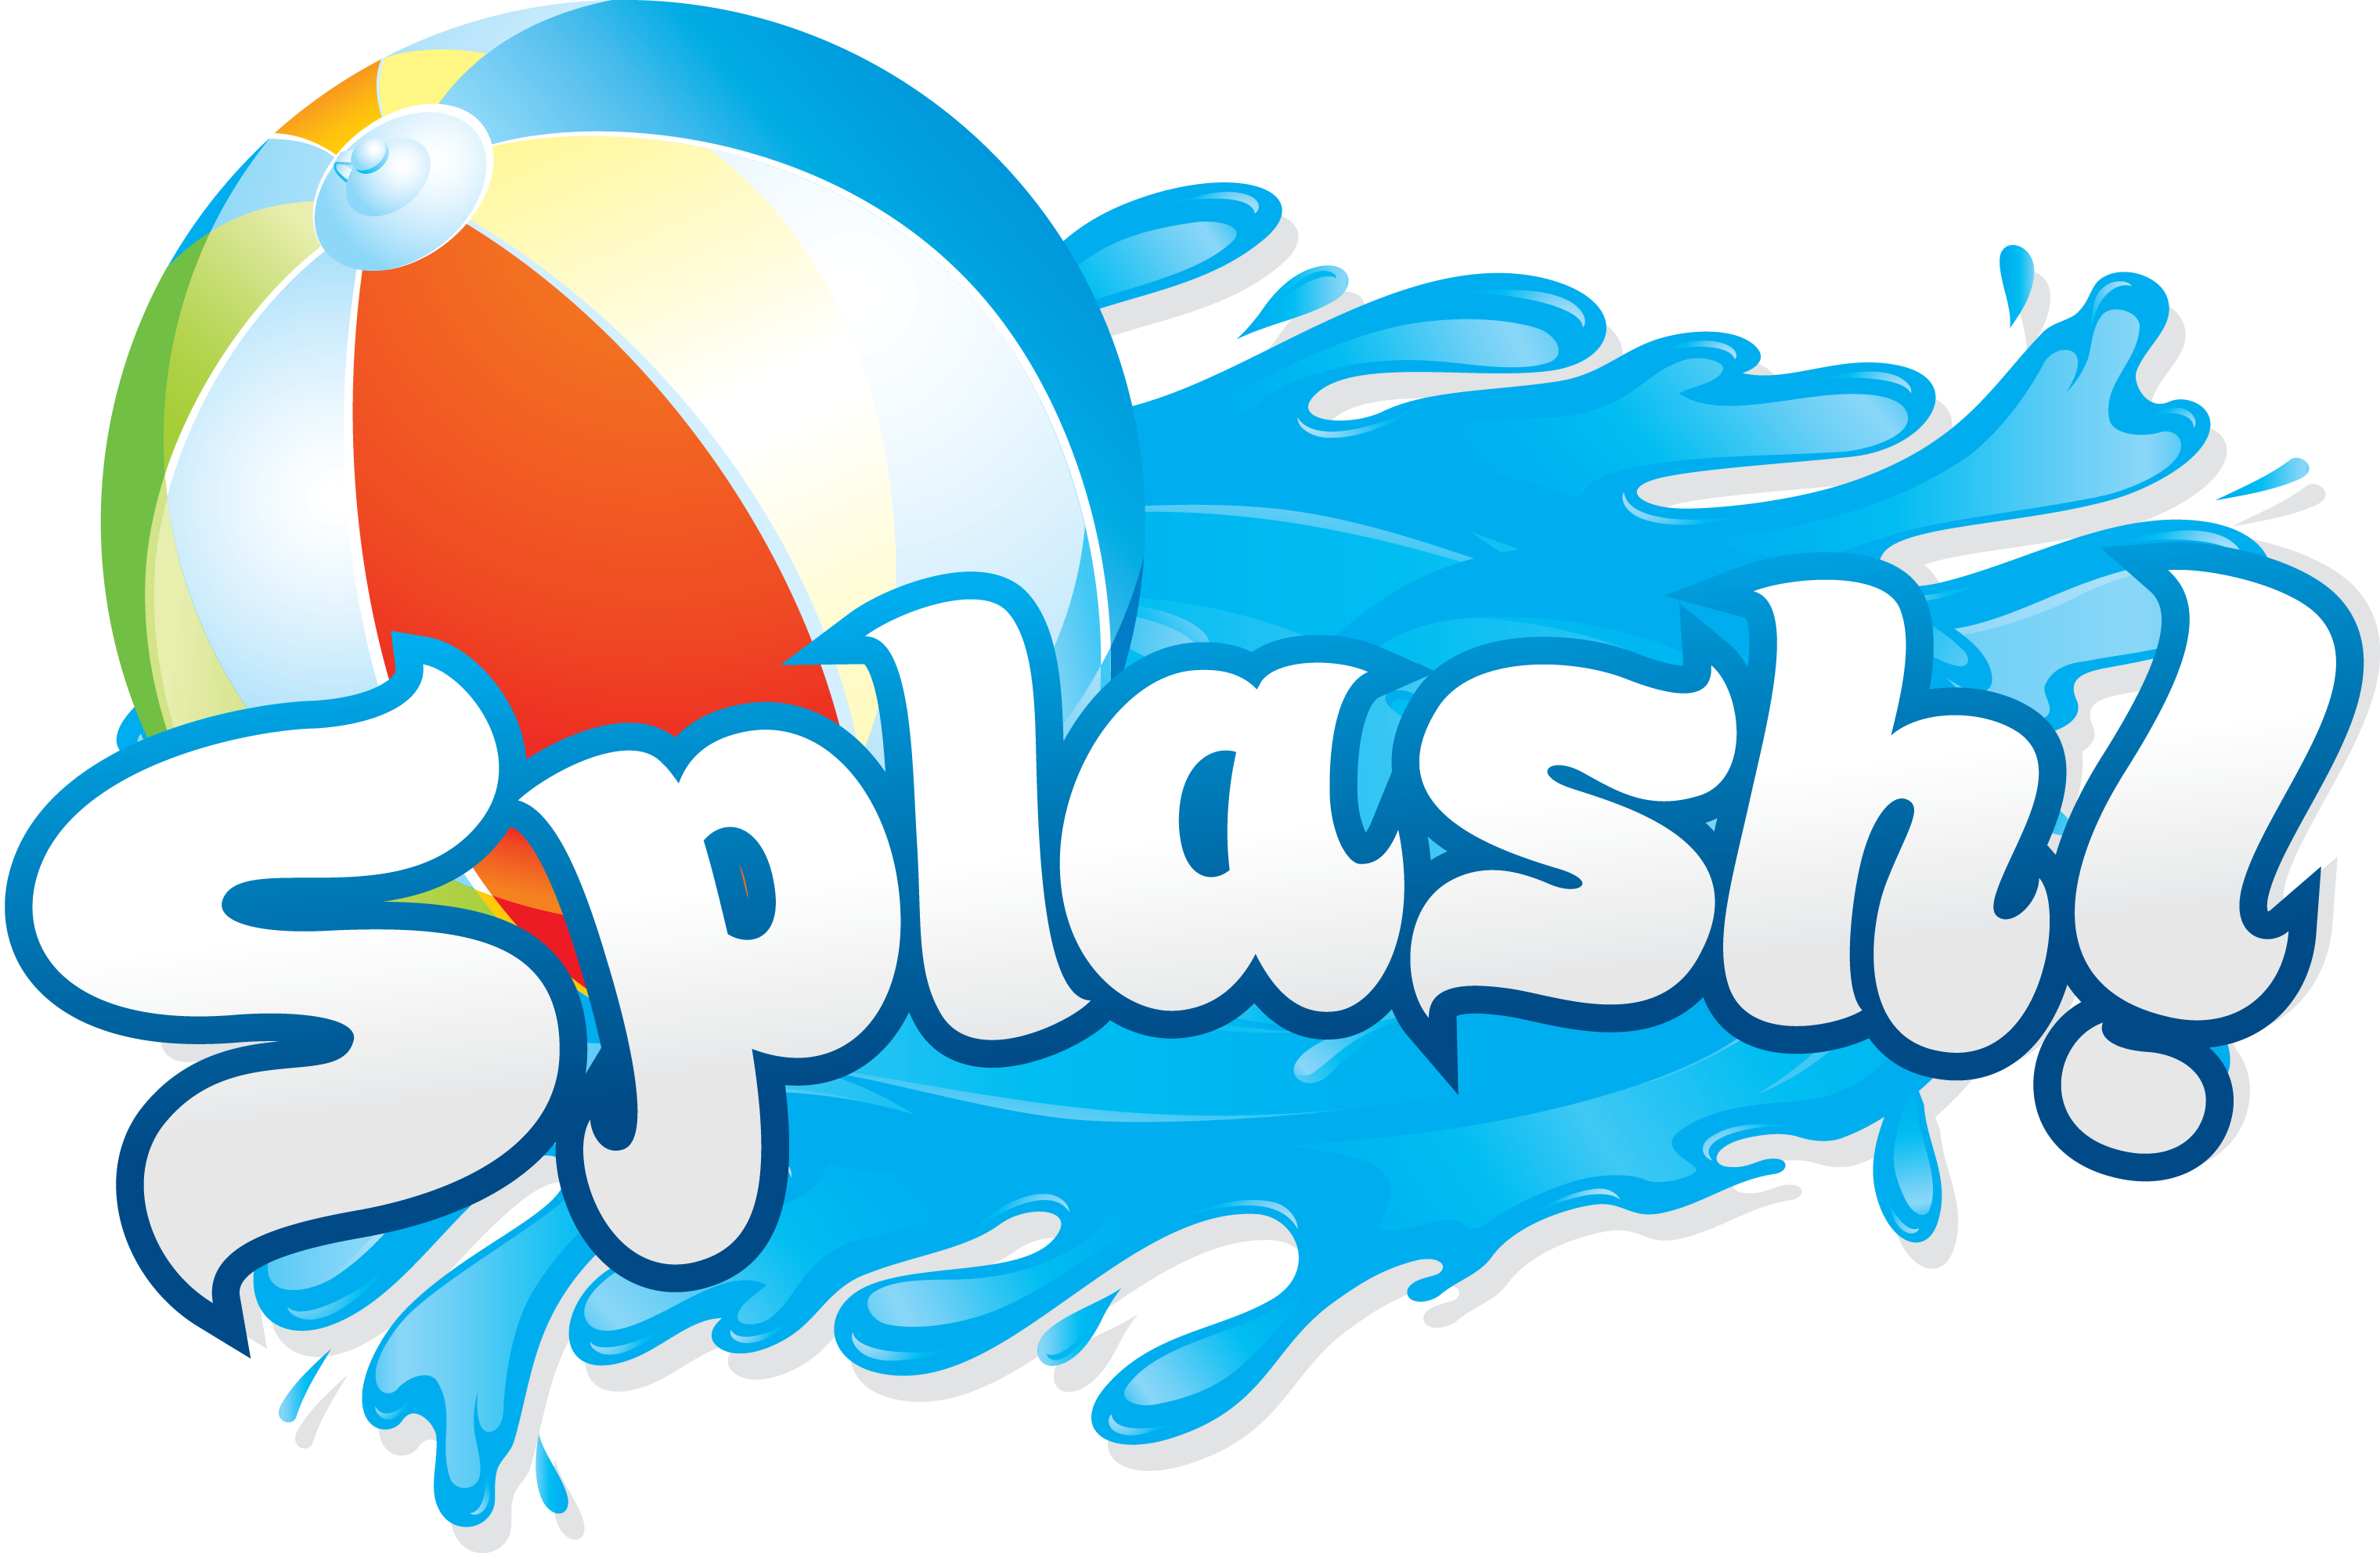 Splash splash day